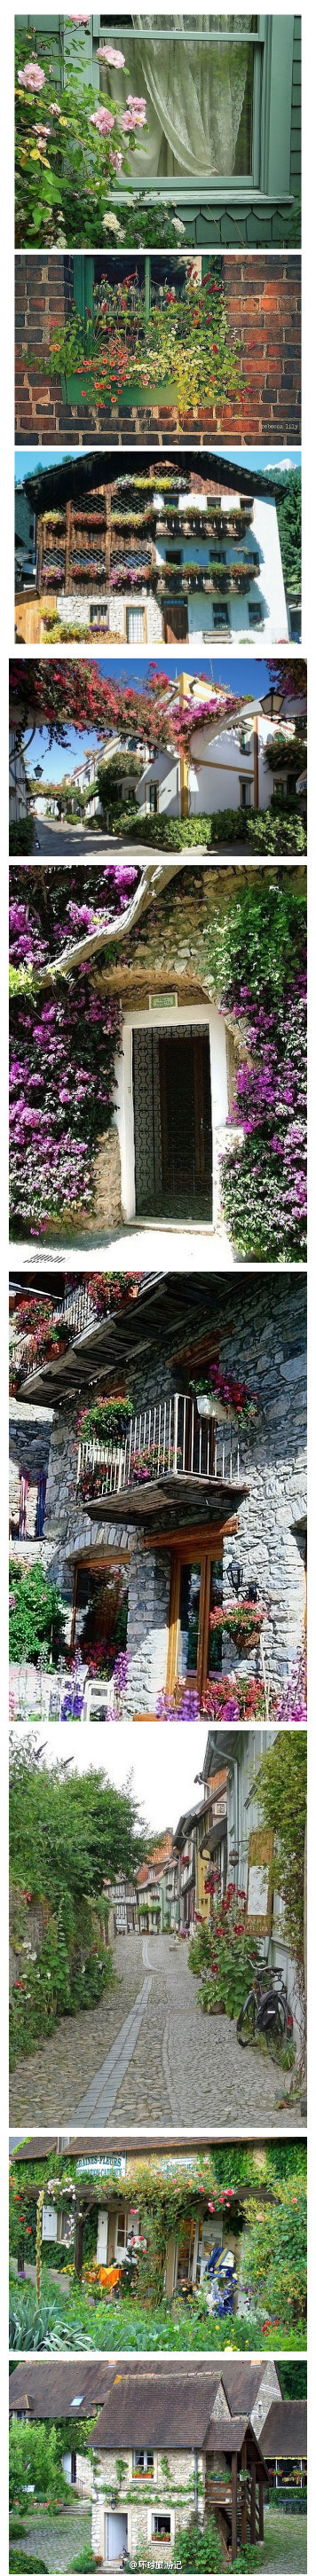 【莫奈的花园：法国小镇吉维尼】 每一扇窗都开满鲜花！水和花卉集合在一起，使天光水影构成了心目中最理想的印象。